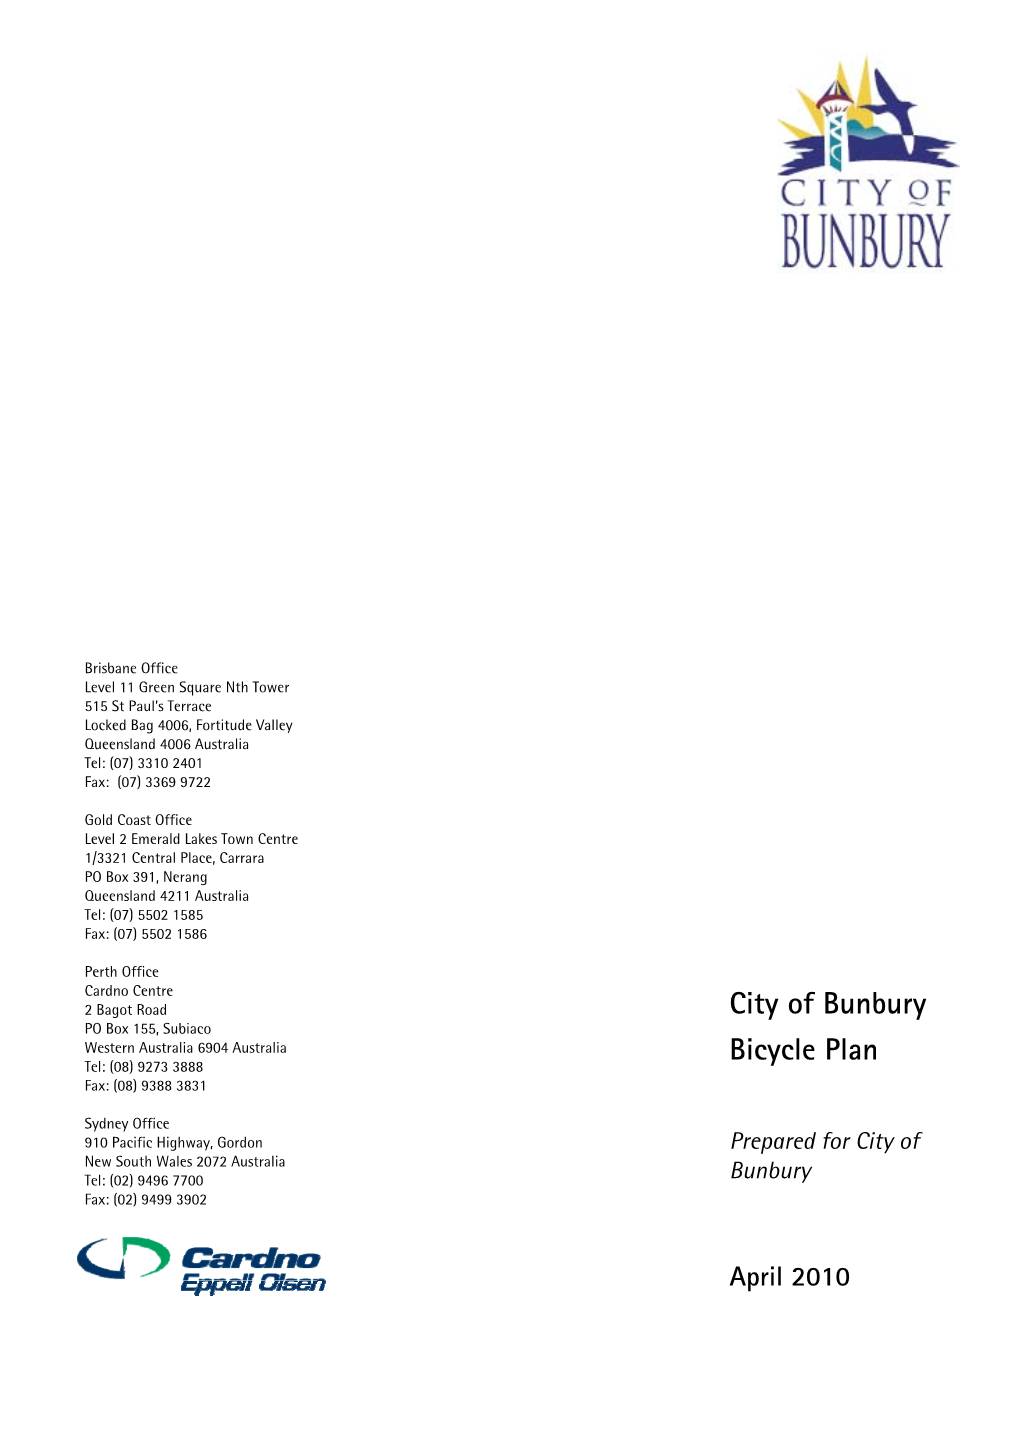 City of Bunbury Bicycle Plan